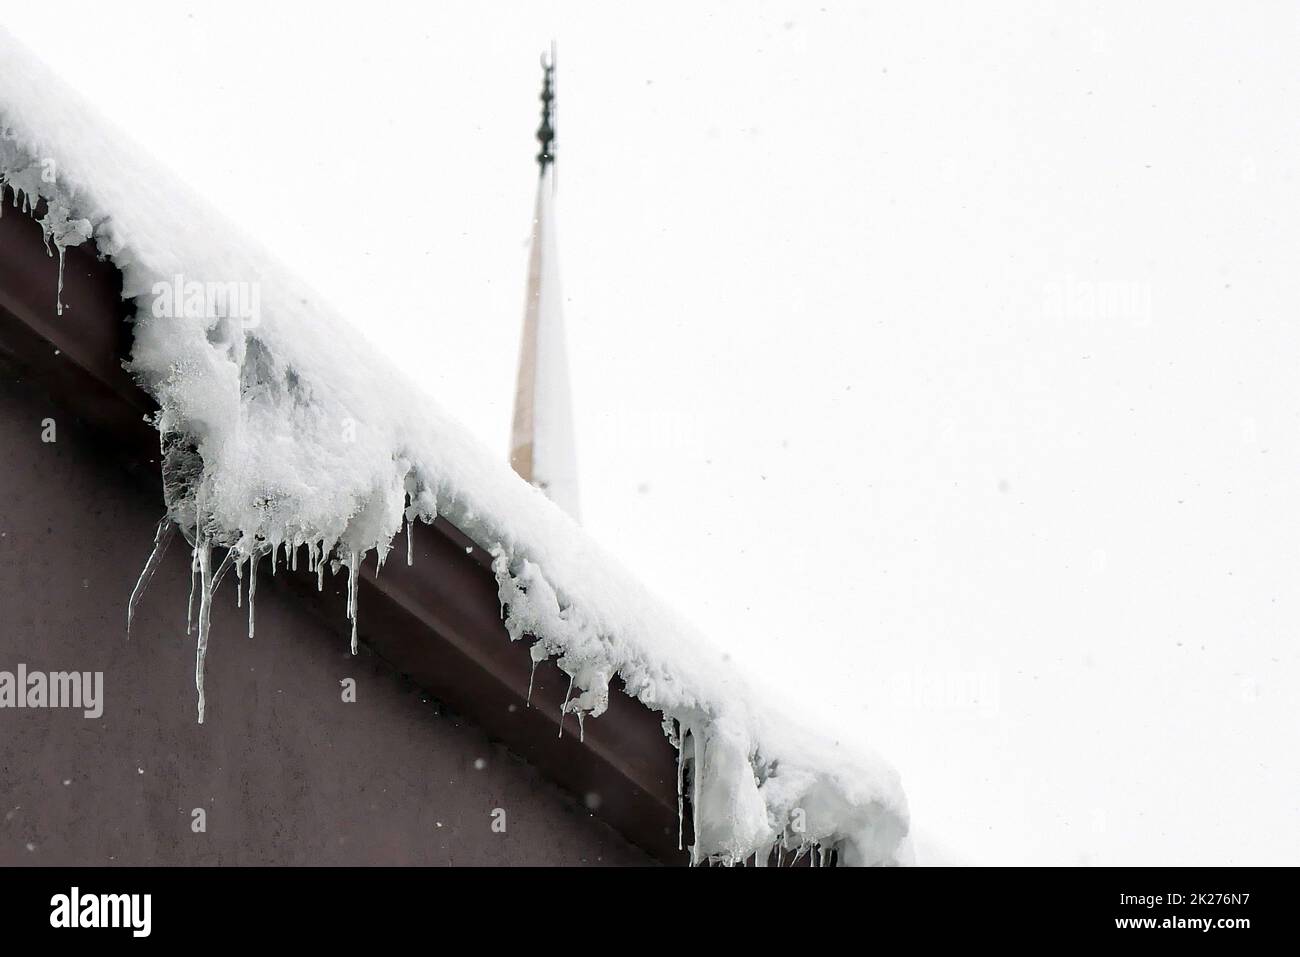 des glaçons sur le toit, il neige, c'est un hiver difficile Banque D'Images